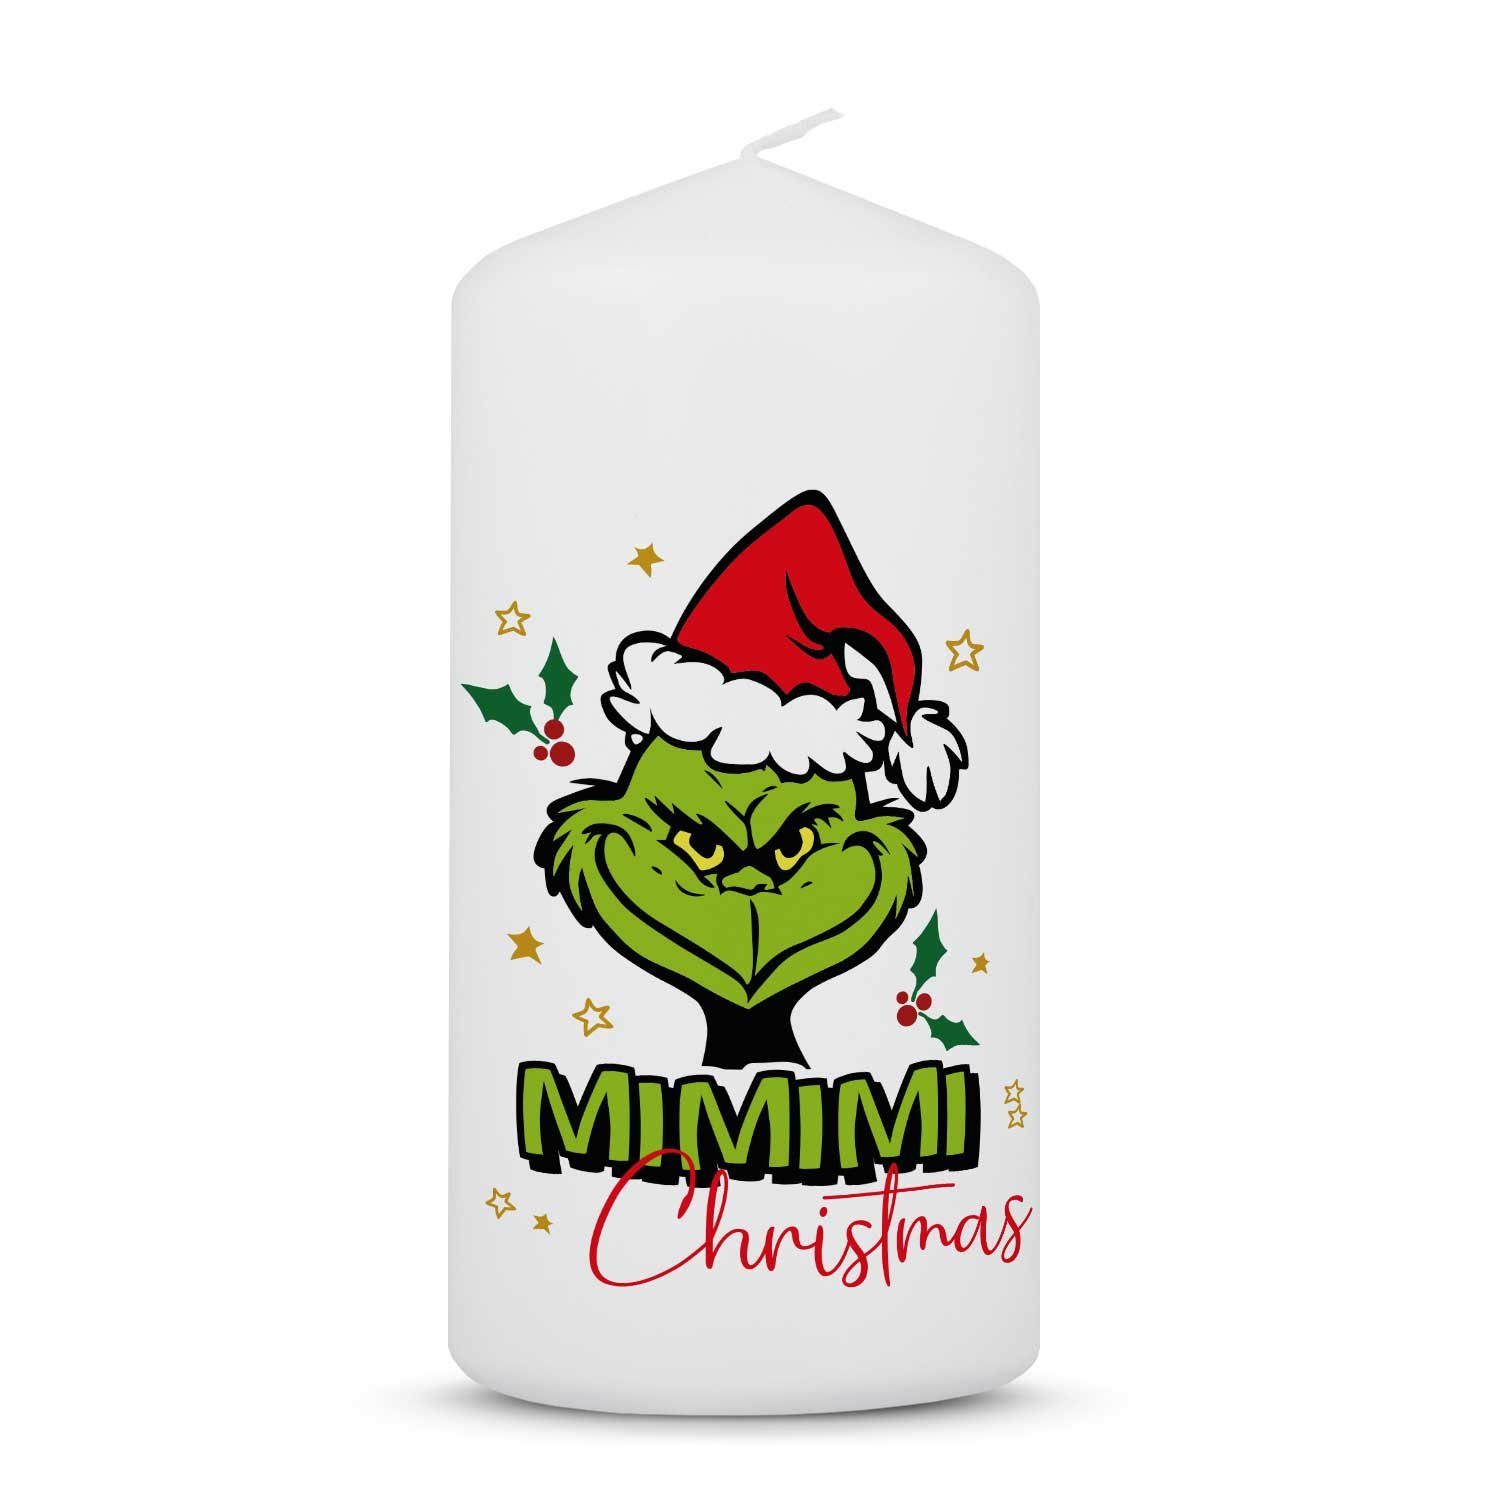 GRAVURZEILE Stumpenkerze Grinch Mimimi zu Weihnachten, freche Weihnachtsdekoration mit Grinch Motiv